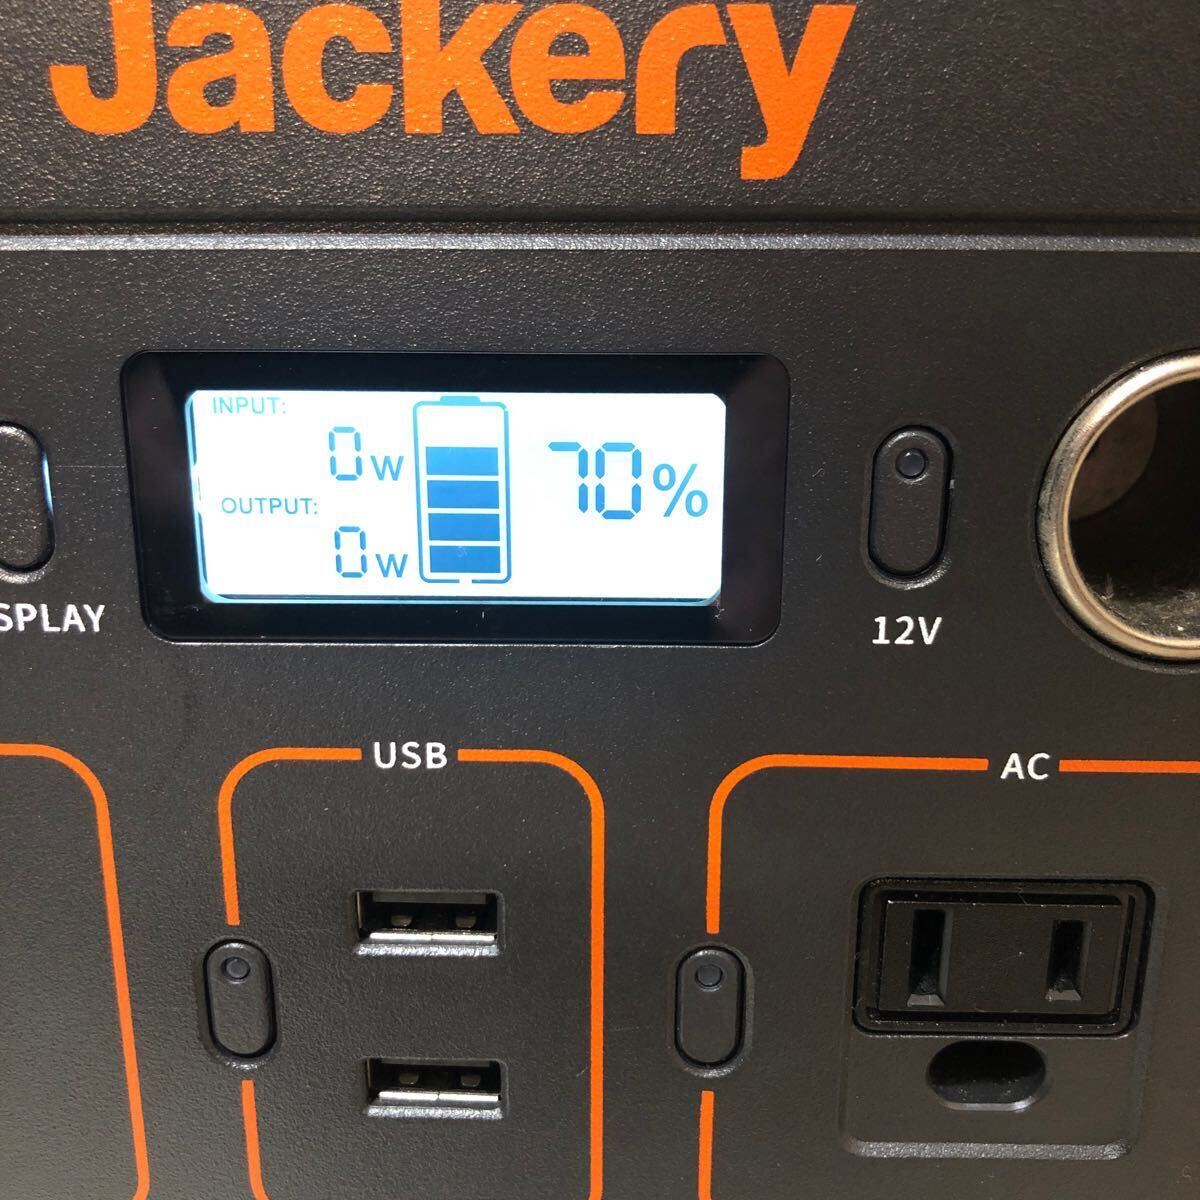 Jackery ジャクリ ポータブル電源 240Wh ポータブルバッテリー アウトドア 大容量 節電 停電対策 防災_画像3